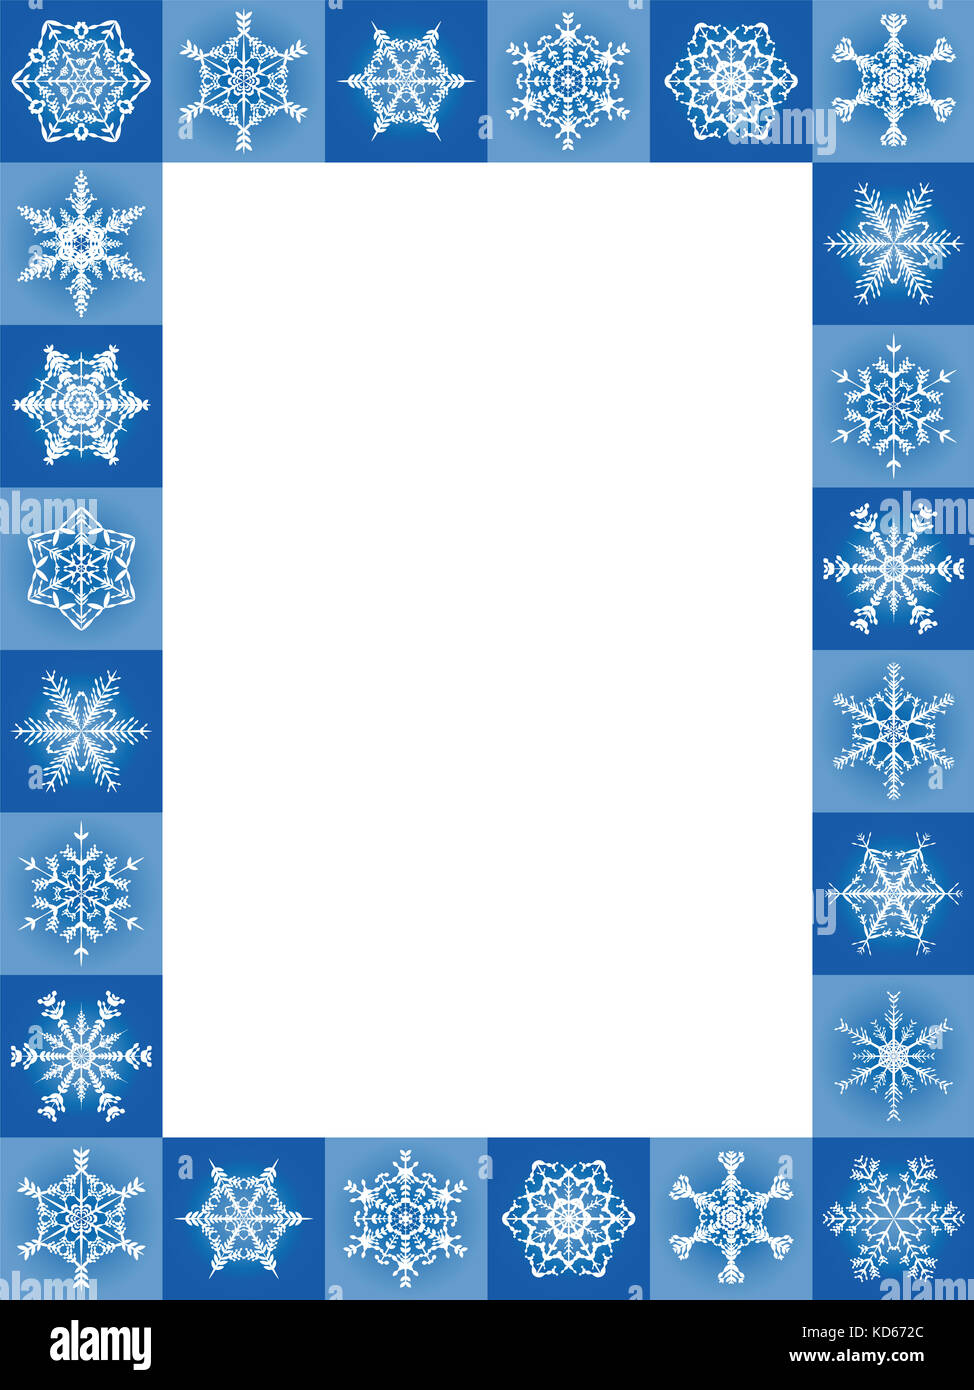 Schneeflocken Blau Weihnachten Rahmen, Hochformat - vierundzwanzig erfreulich schöne Fliesen - Abbildung mit leeren weißen Mitte gekennzeichnet werden. Stockfoto